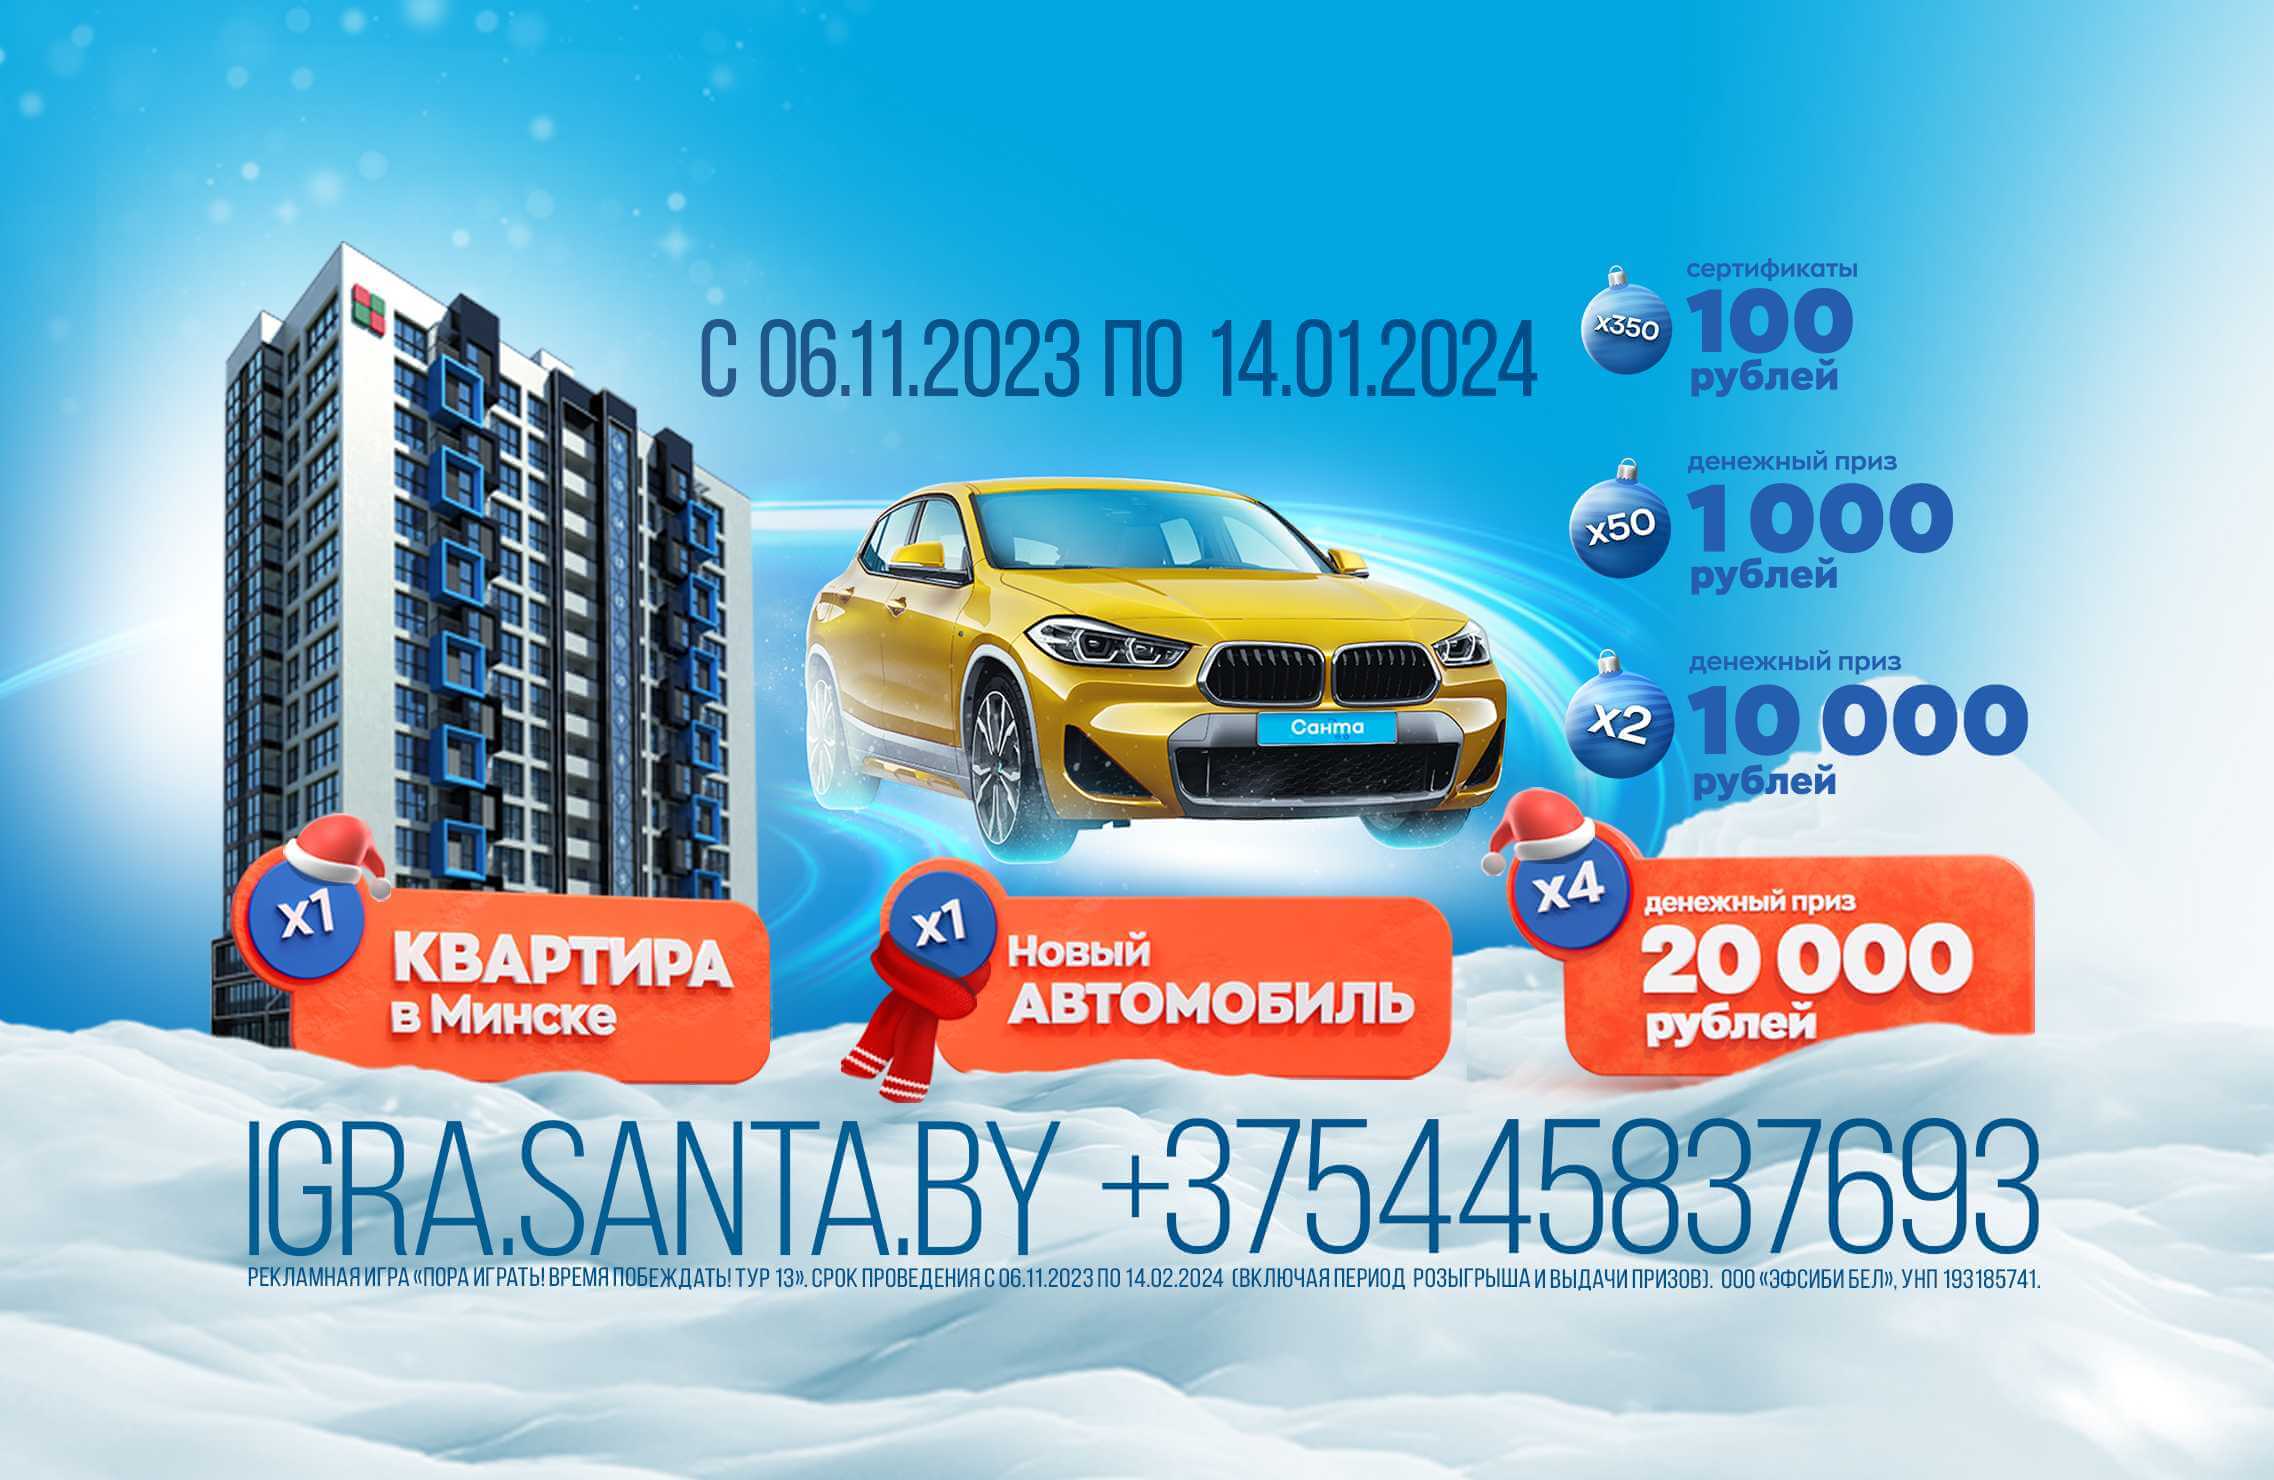 Могилевчан удивили квартирой в Минске и автомобилем за 2 рубля. Так бывает?